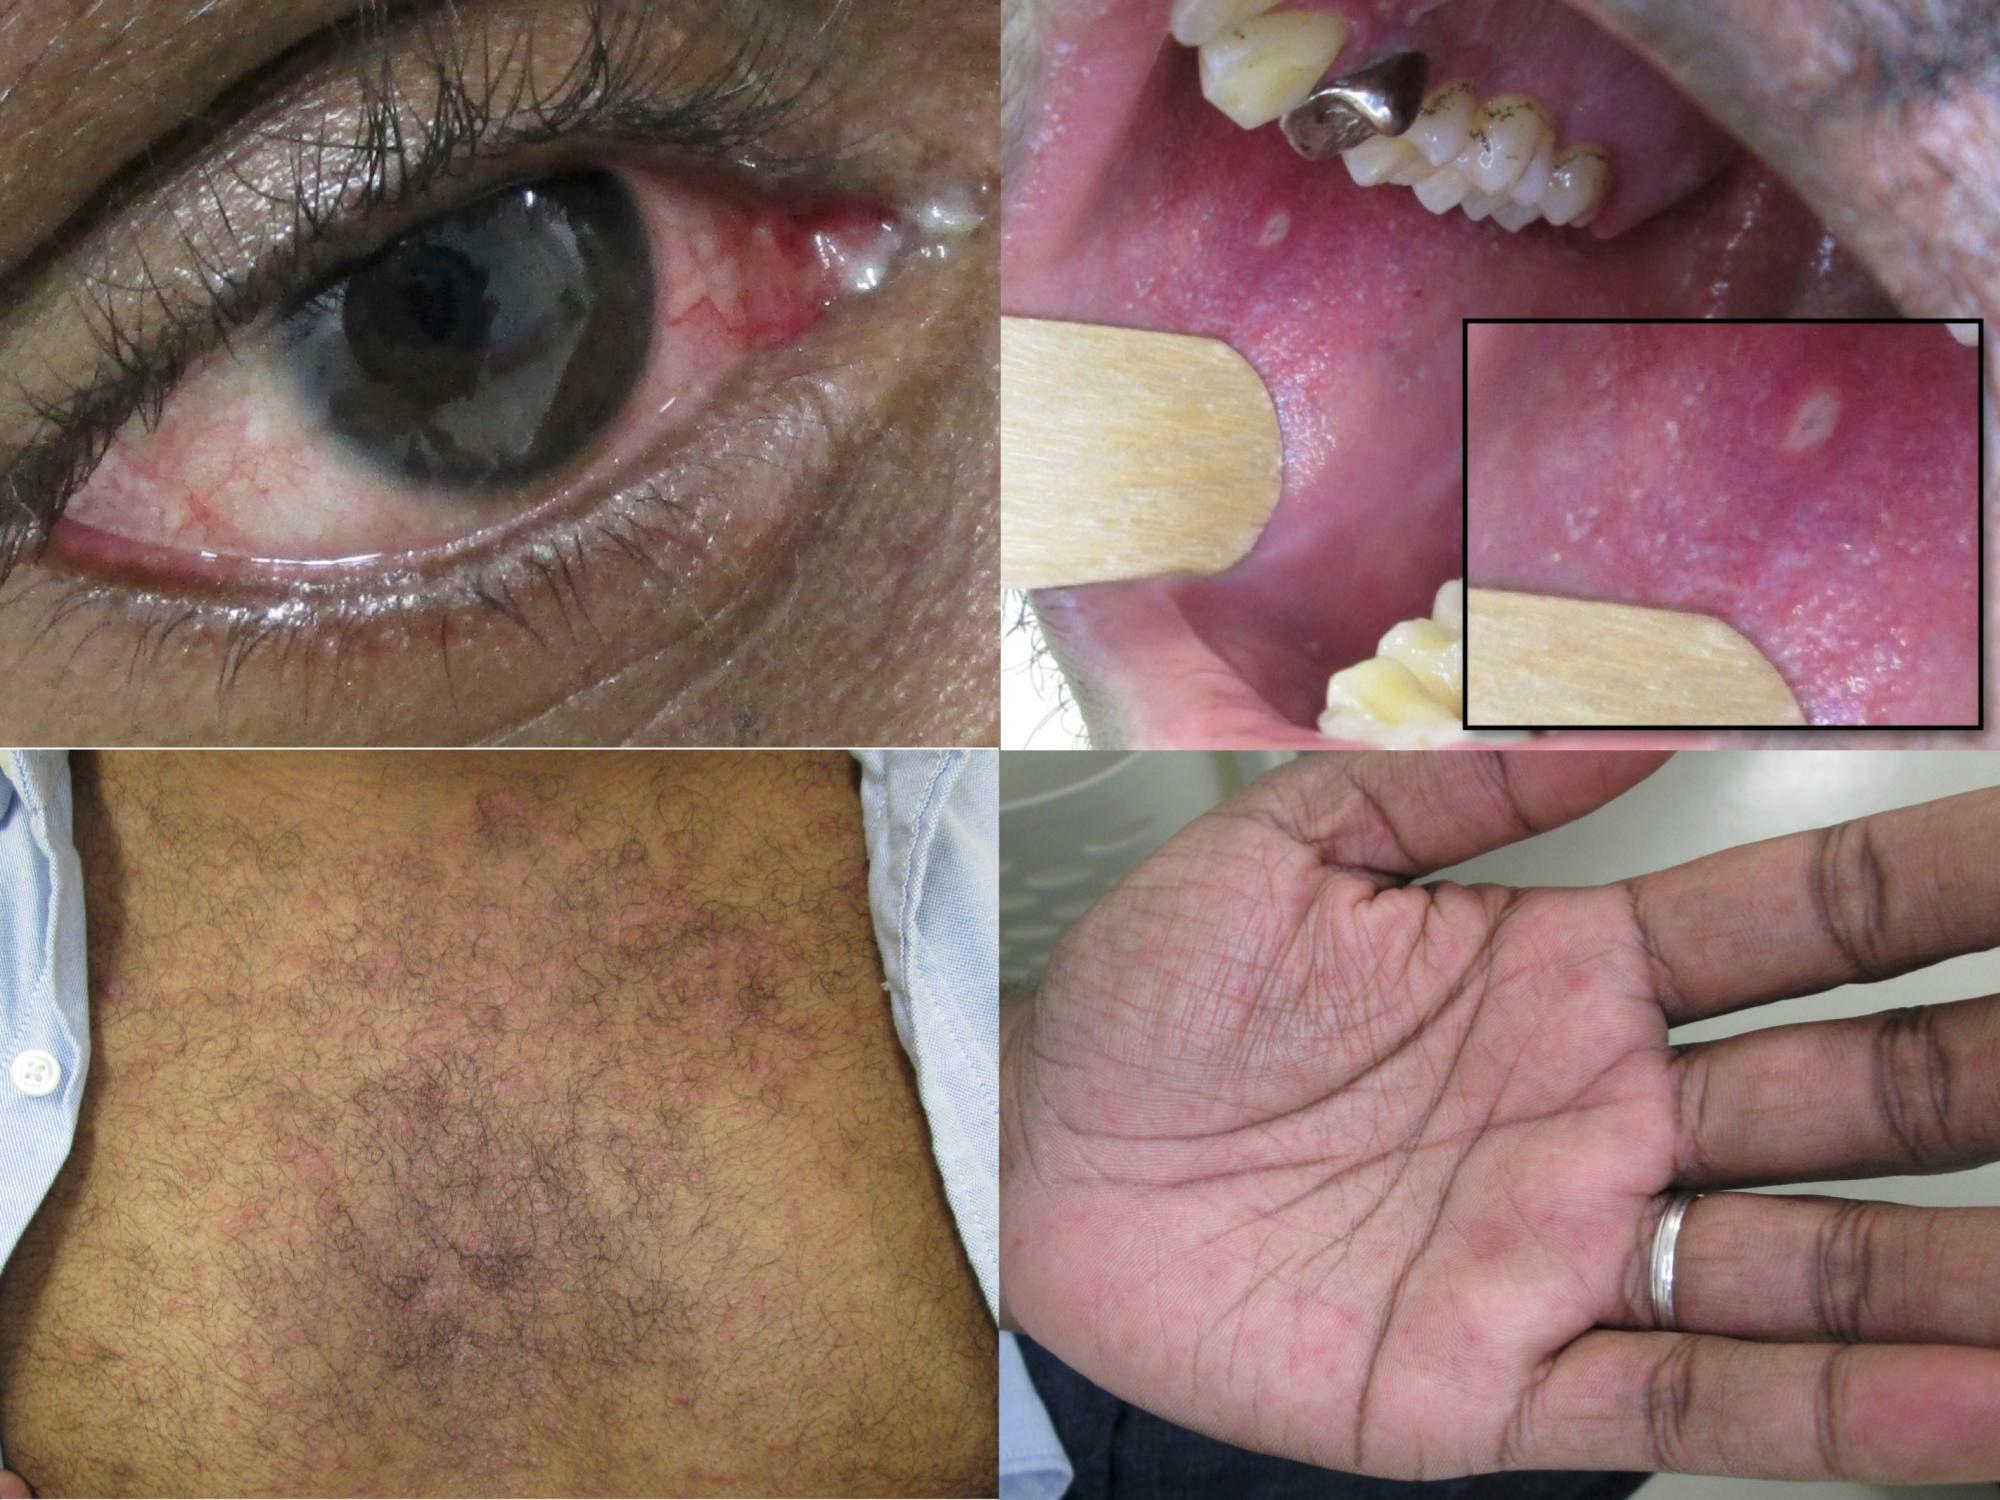 麻しん患者の眼球結膜充血、眼視（左上）、コプリック斑（右上）、体幹および手のひらの皮疹（左下、右下）患者さんの同意を得た上で筆者撮影